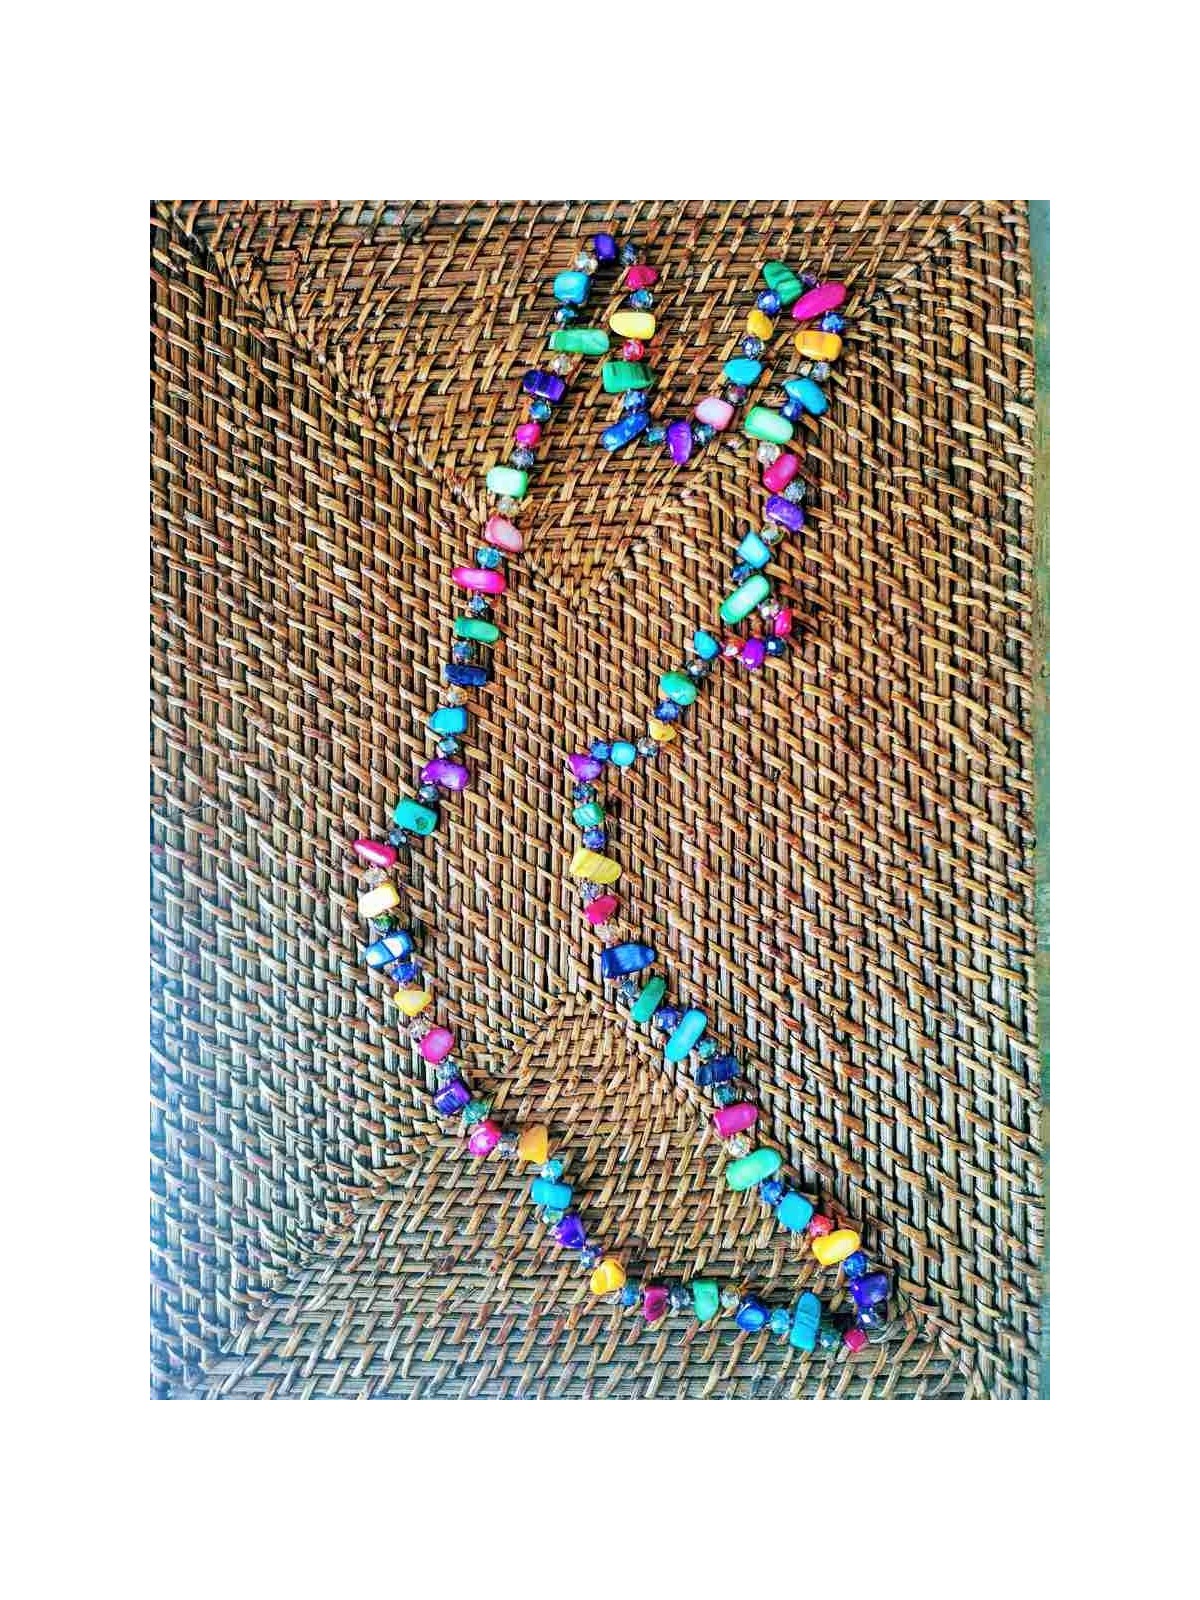 Grand sautoir perles multicolores l Vue de face l Tilleulmenthe mode femme en ligne